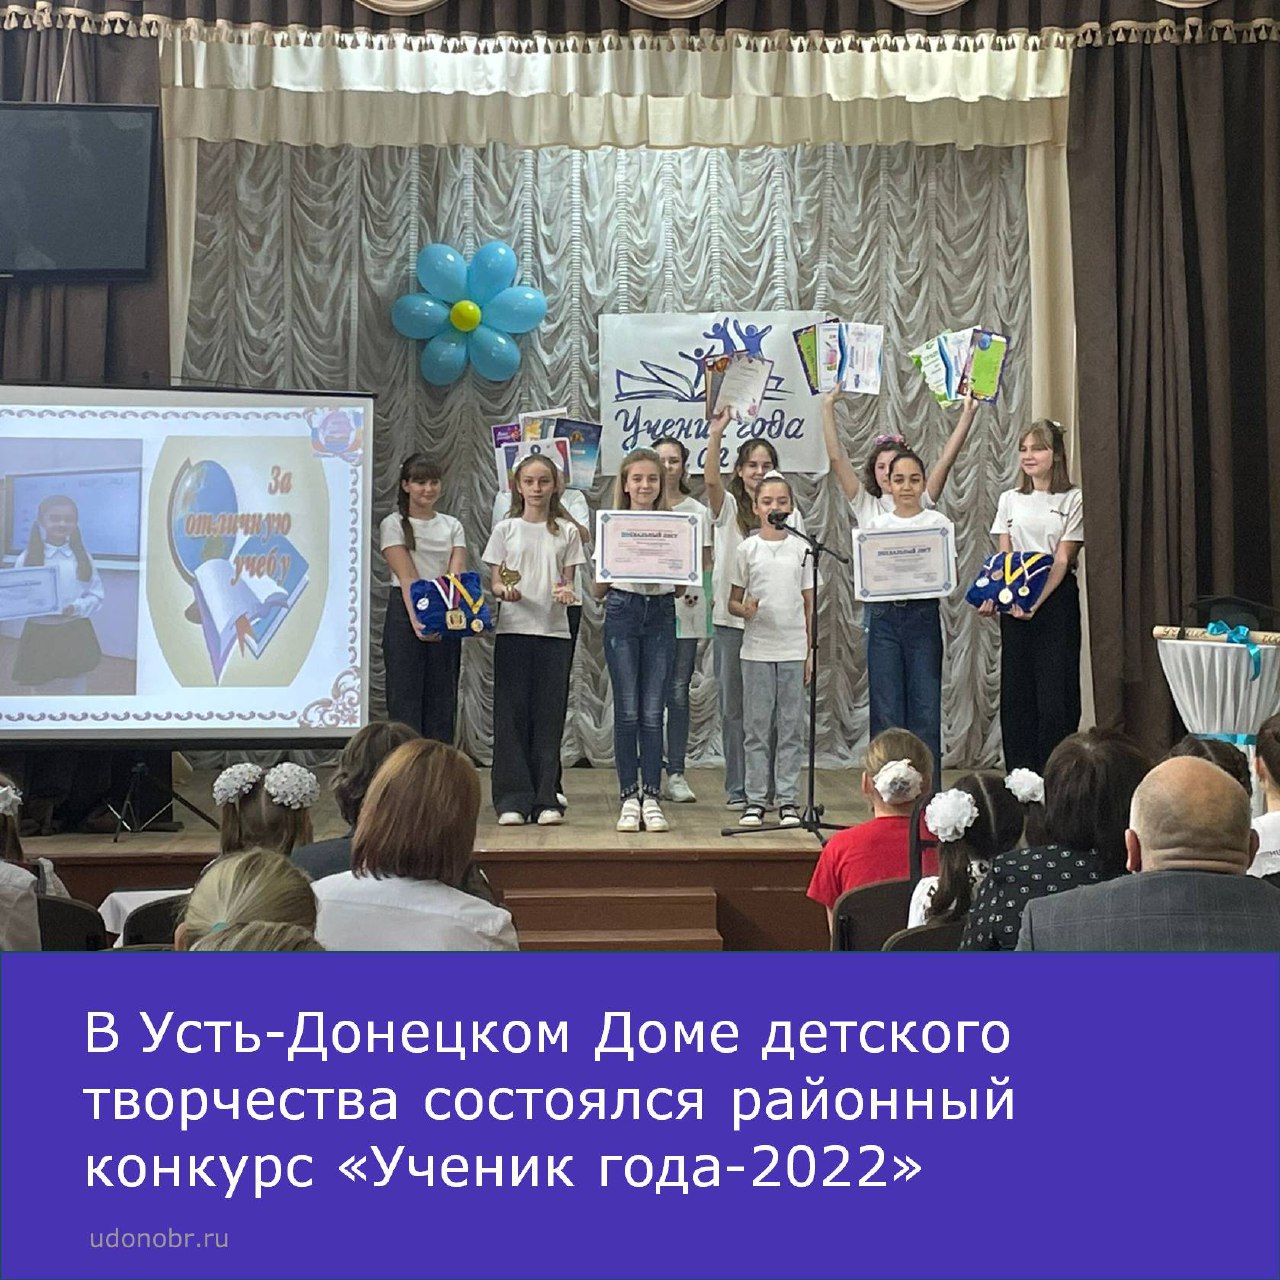 В Усть-Донецком Доме детского творчества состоялся районный конкурс «Ученик года-2022»